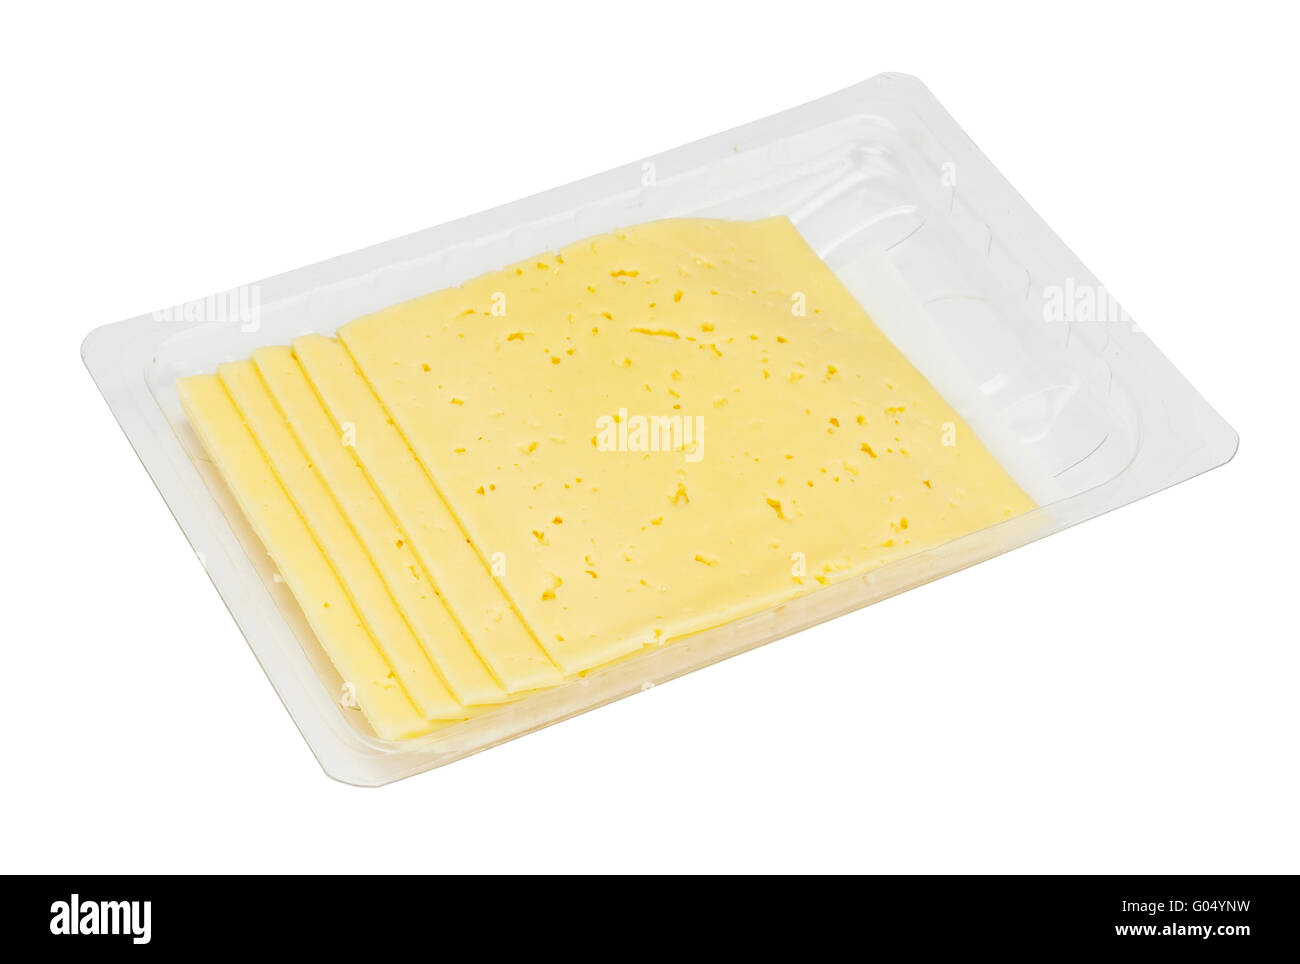 Cent cinquante grammes de fromage rural émincées dans le récipient en plastique standard. En matière grasse du fromage - cinquante pour cent. Isolat Banque D'Images